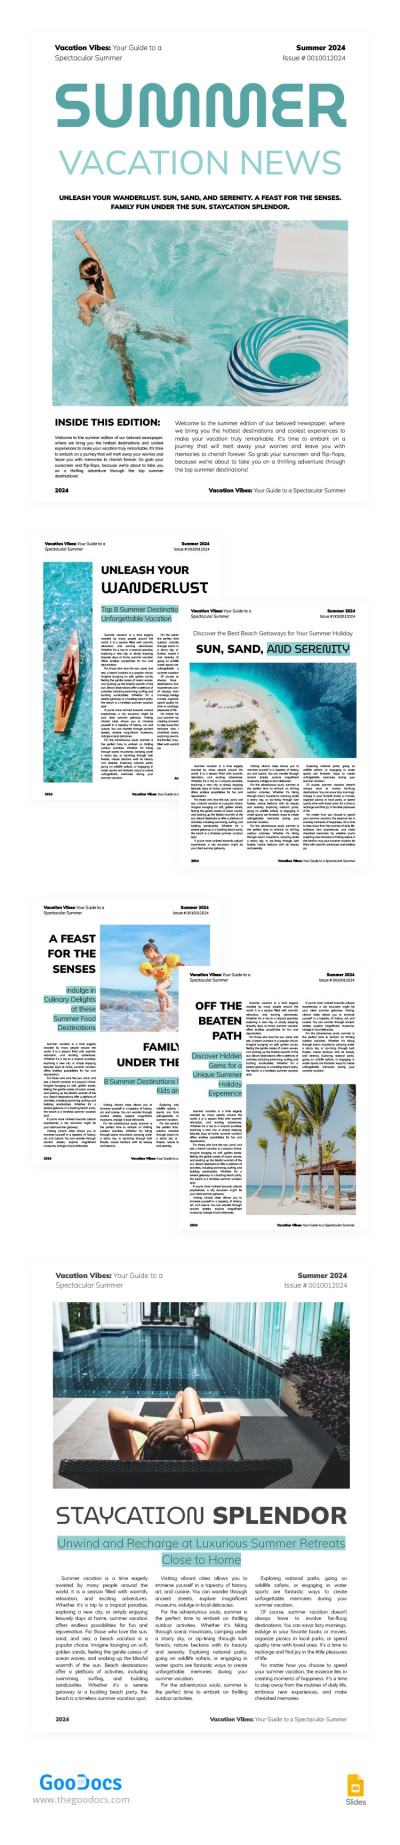 Modern Summer Vacation Newspaper Template